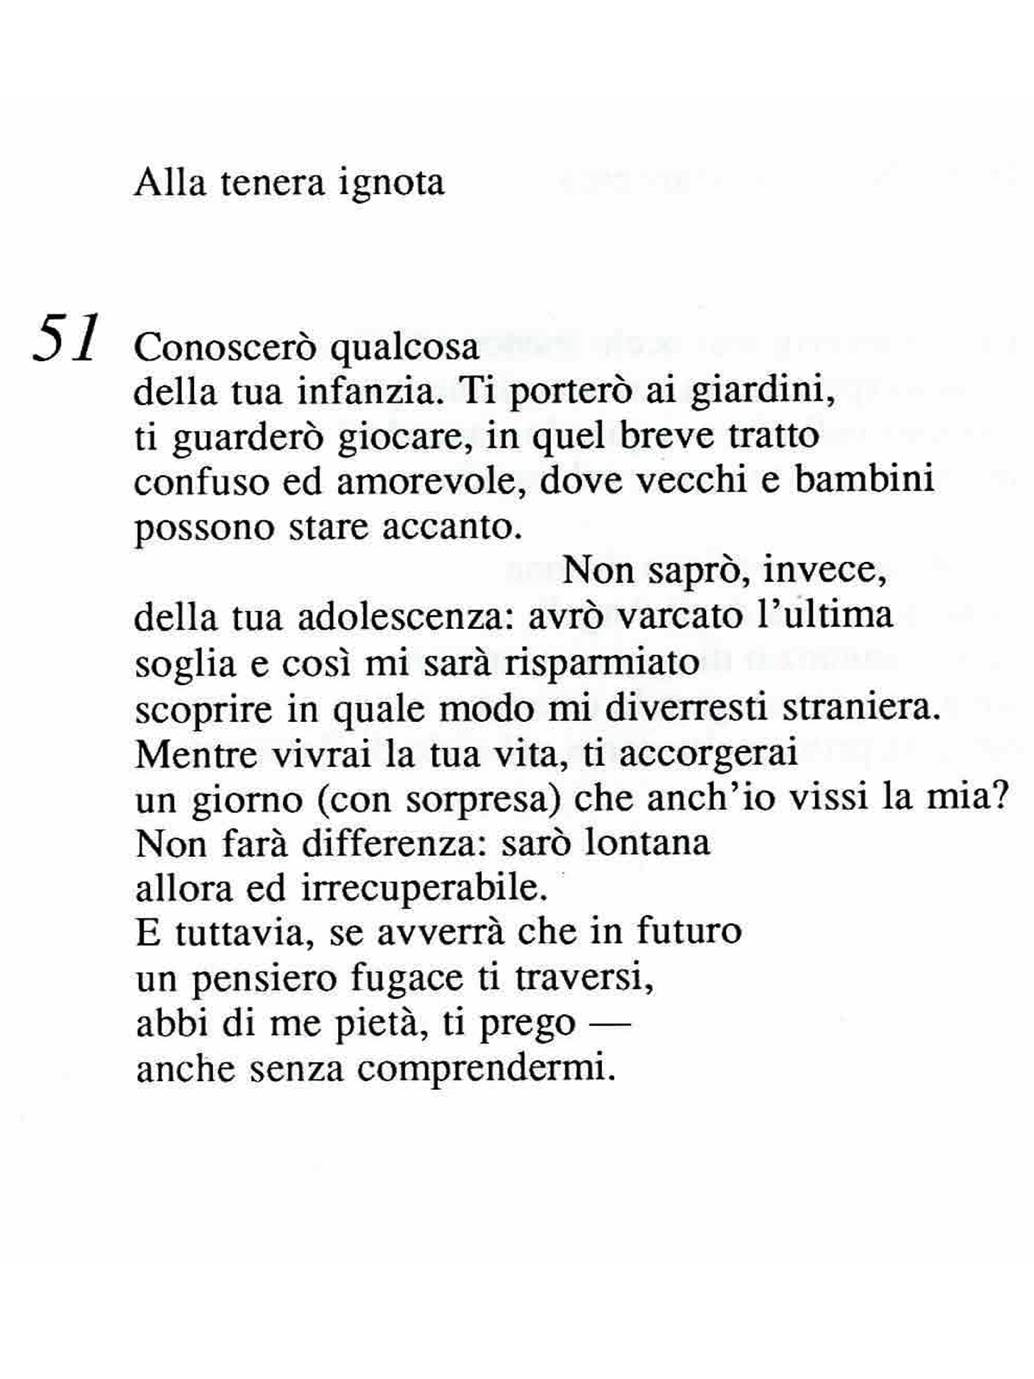 Poesia Anelli Del Tempo Alla Tenera Ignota1